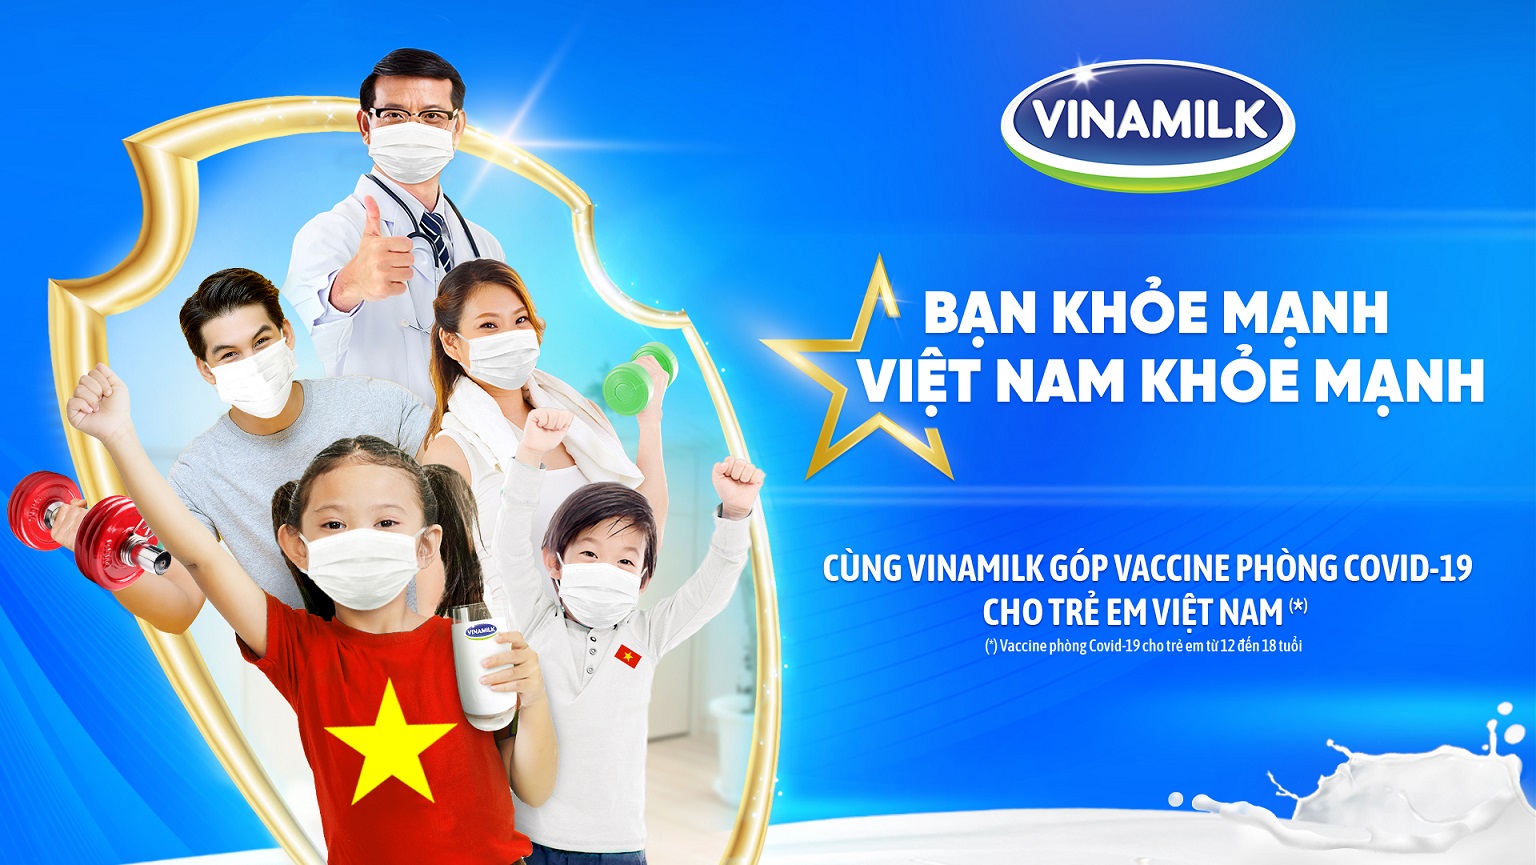 Vinamilk khởi động chiến dịch “Bạn khỏe mạnh, Việt Nam khỏe mạnh”, góp Vaccine phòng Covid-19 cho trẻ em 12-18 tuổi - Ảnh 1.